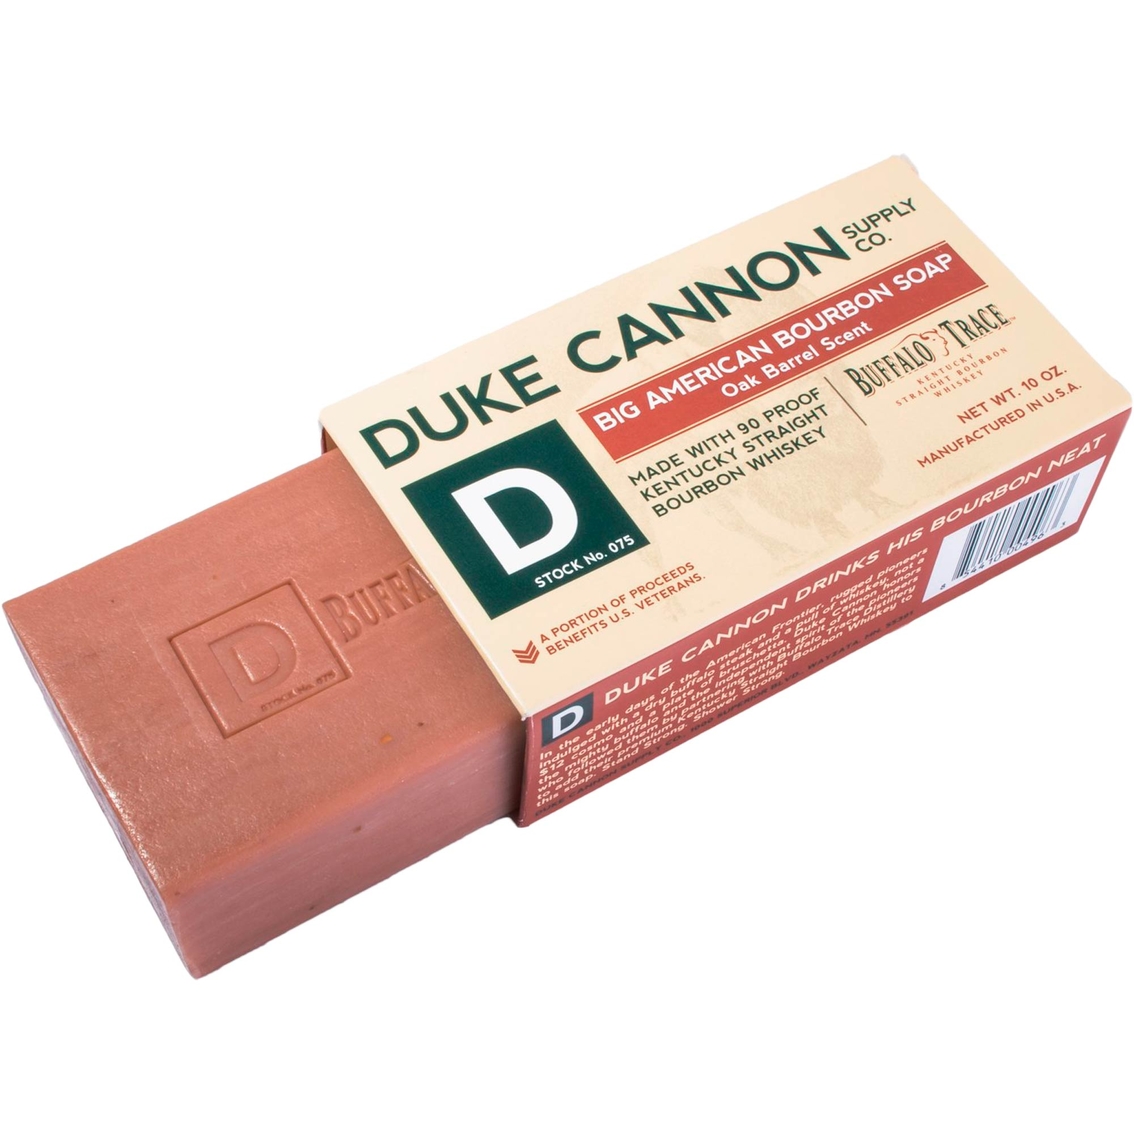 Duke Cannon Big American Bourbon Soap, Oak Barrel Scent - Image 3 of 3